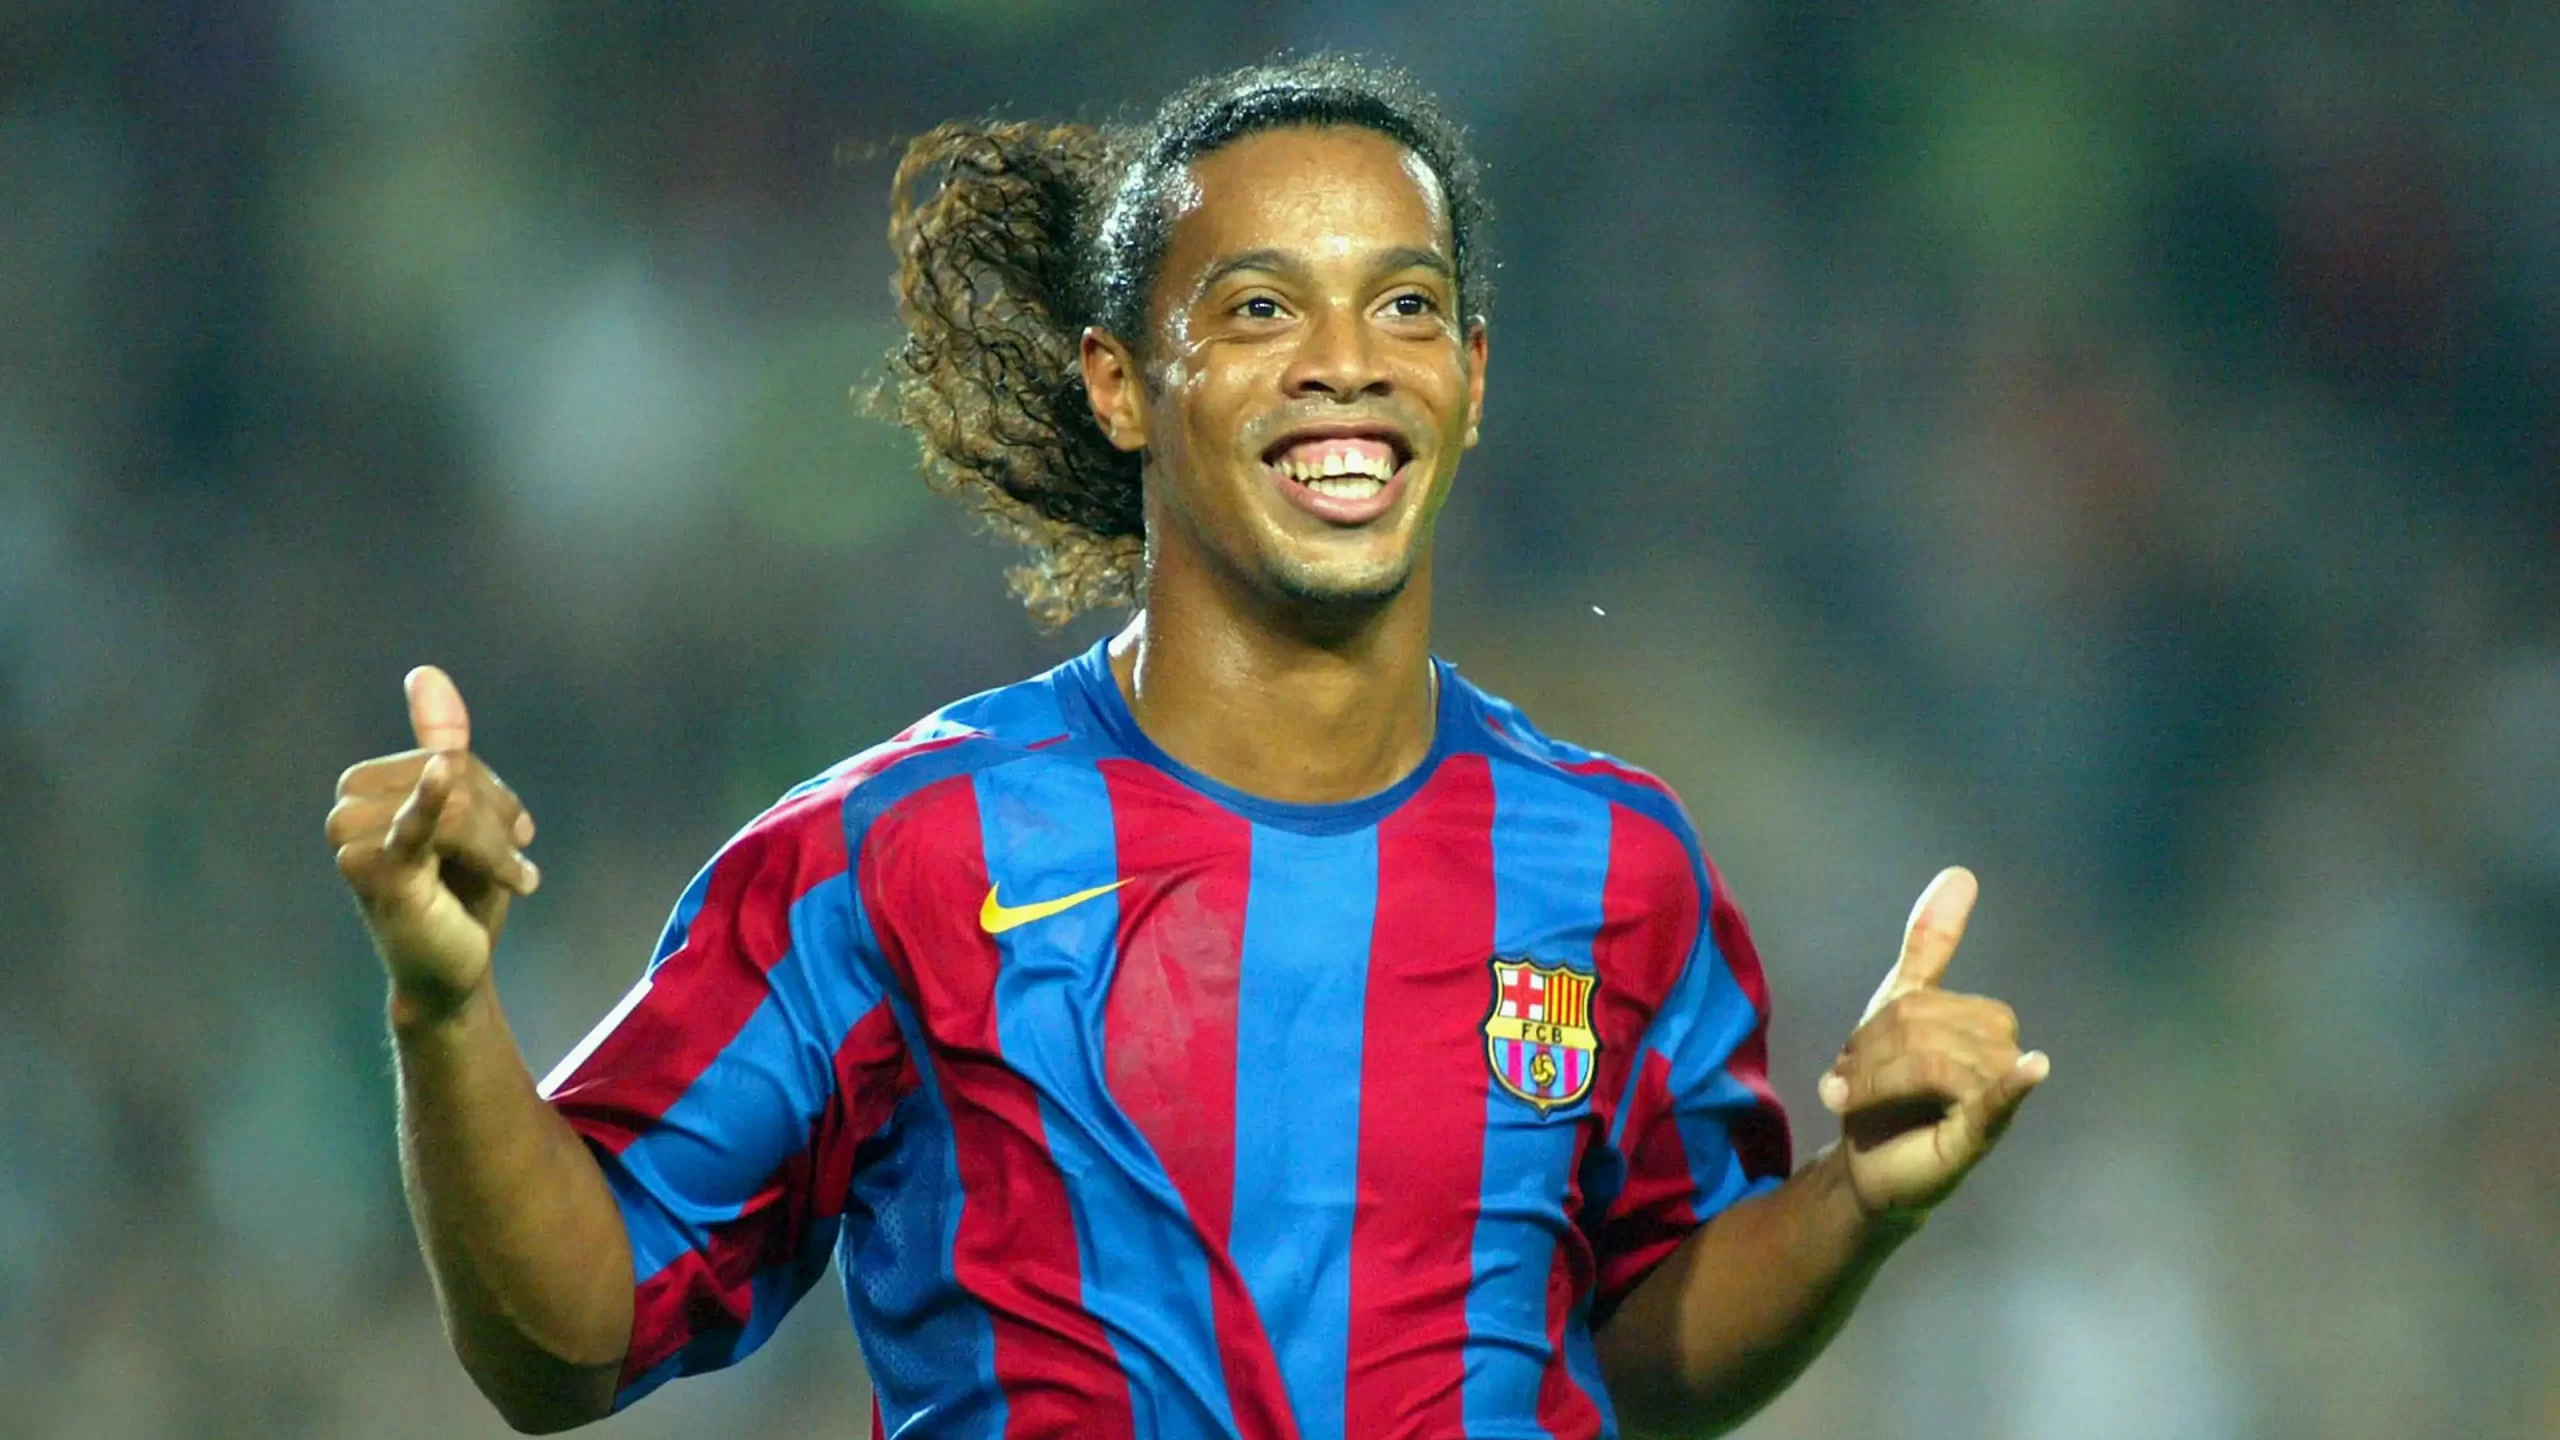 Cầu thủ Ronaldinho - Thiên tài dị biệt của làng túc cầu